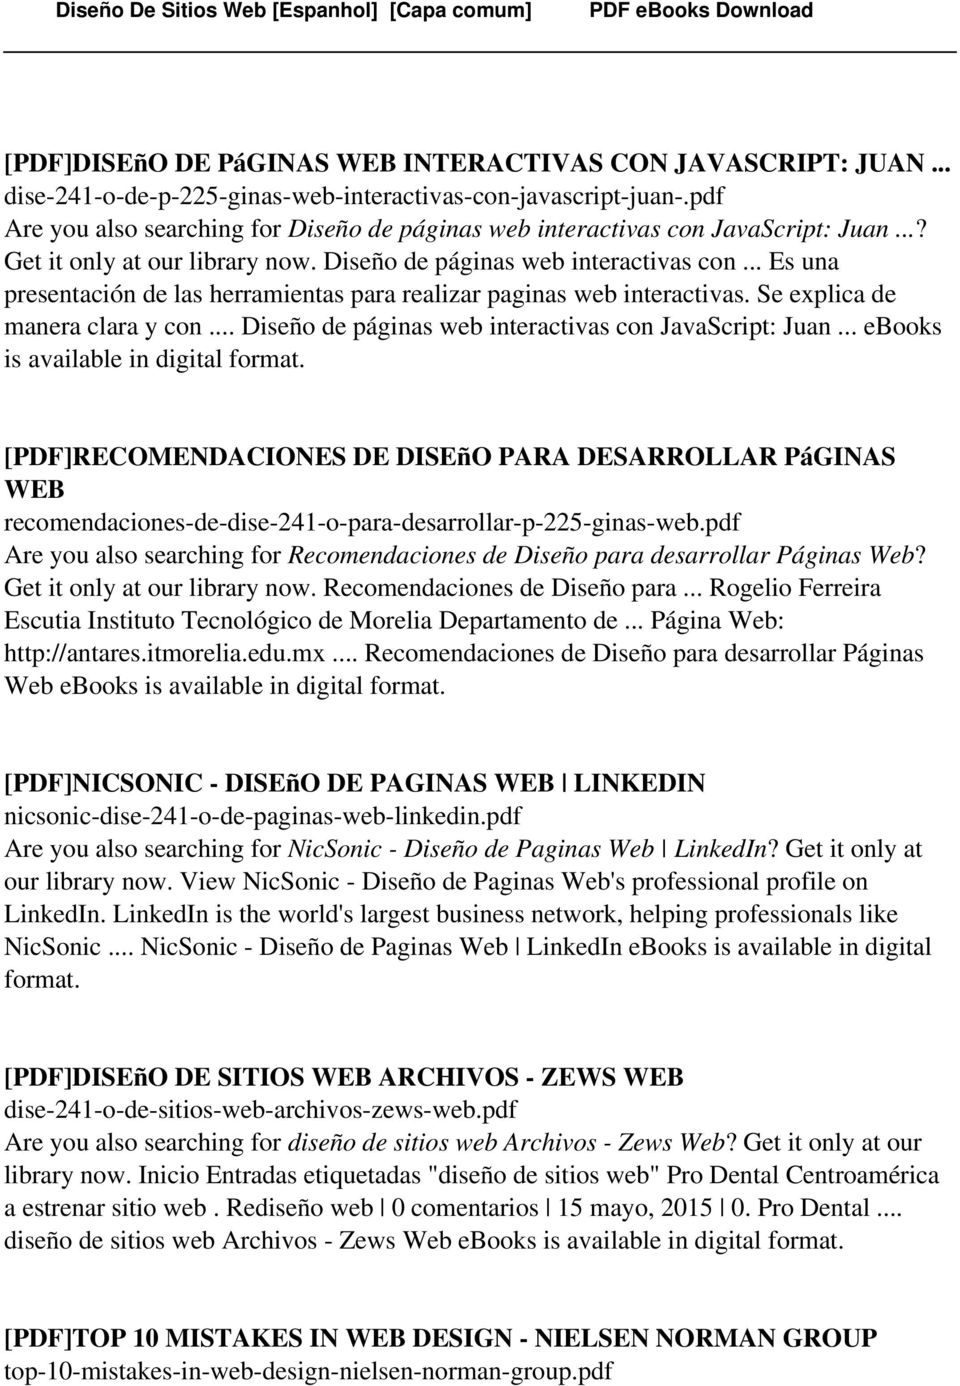 Se explica de manera clara y con... Diseño de páginas web interactivas con JavaScript: Juan... ebooks is available in digital format.